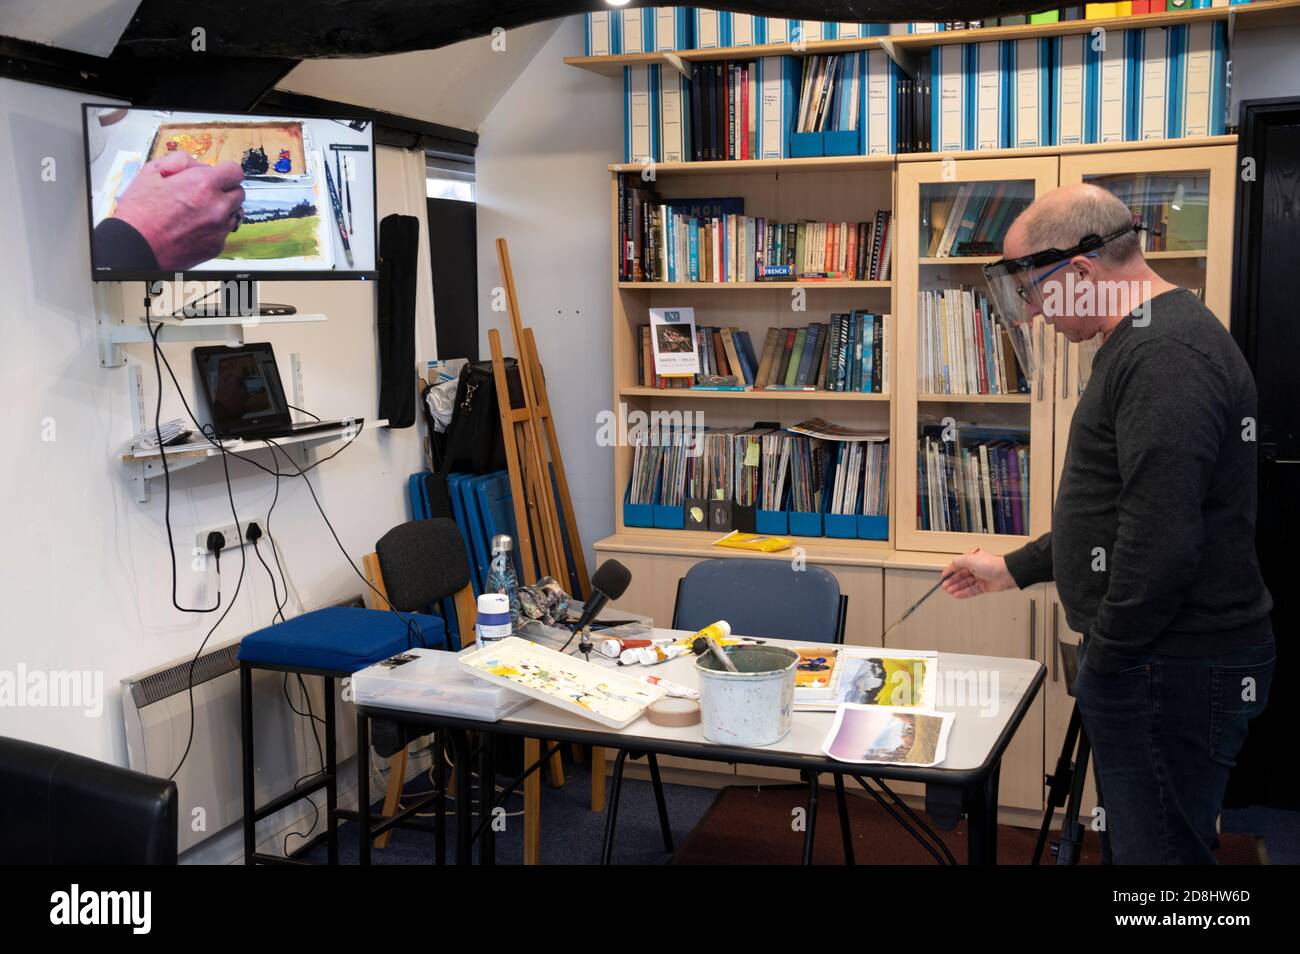 Au cours de la pandémie ou épidémie actuelle de Covid 19, un professeur d'art utilisant un écran d'ordinateur et démontrant ses techniques d'art dans une salle de classe à son art Banque D'Images